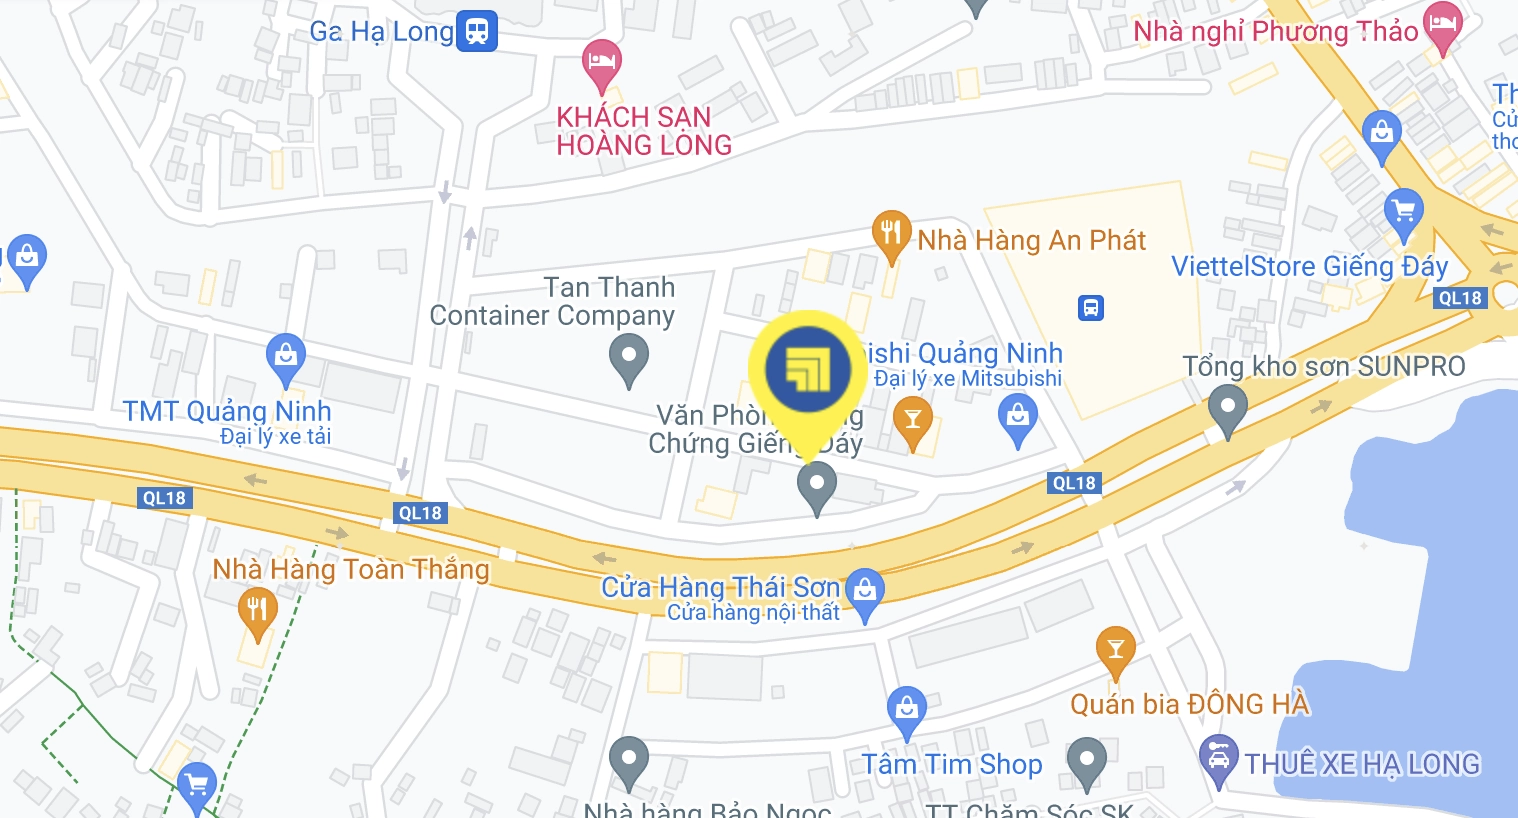 Tuan Anh Map